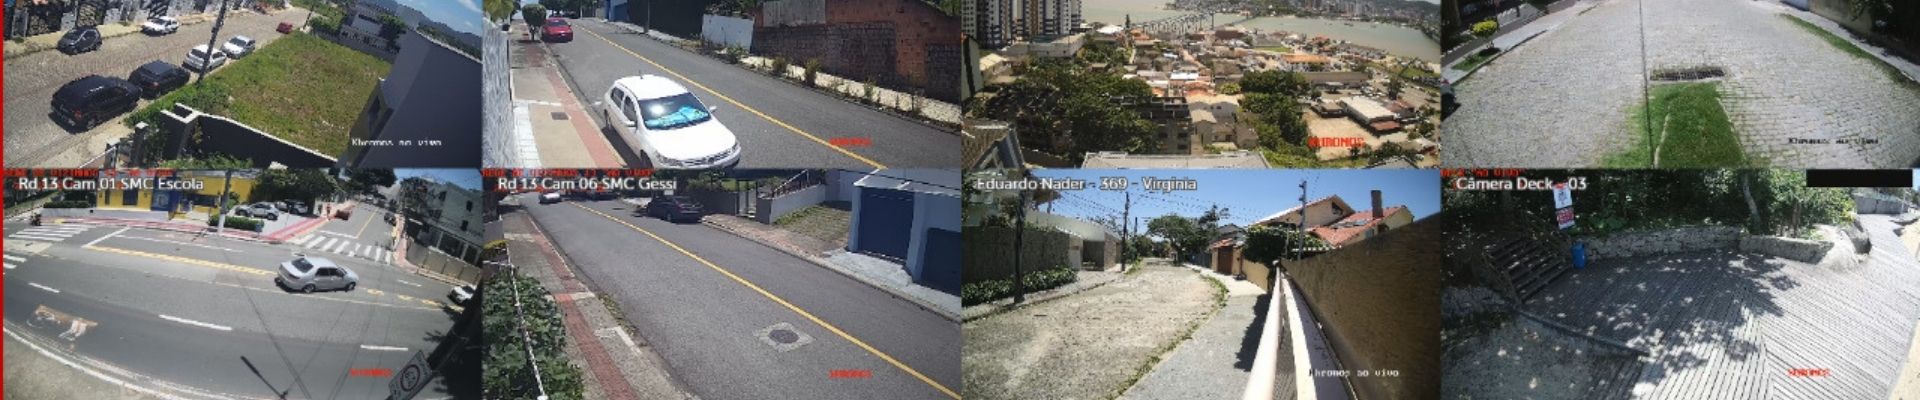 Ideia inovadora de segurança criada em Santa Catarina une vizinhos de vários estados do Brasil